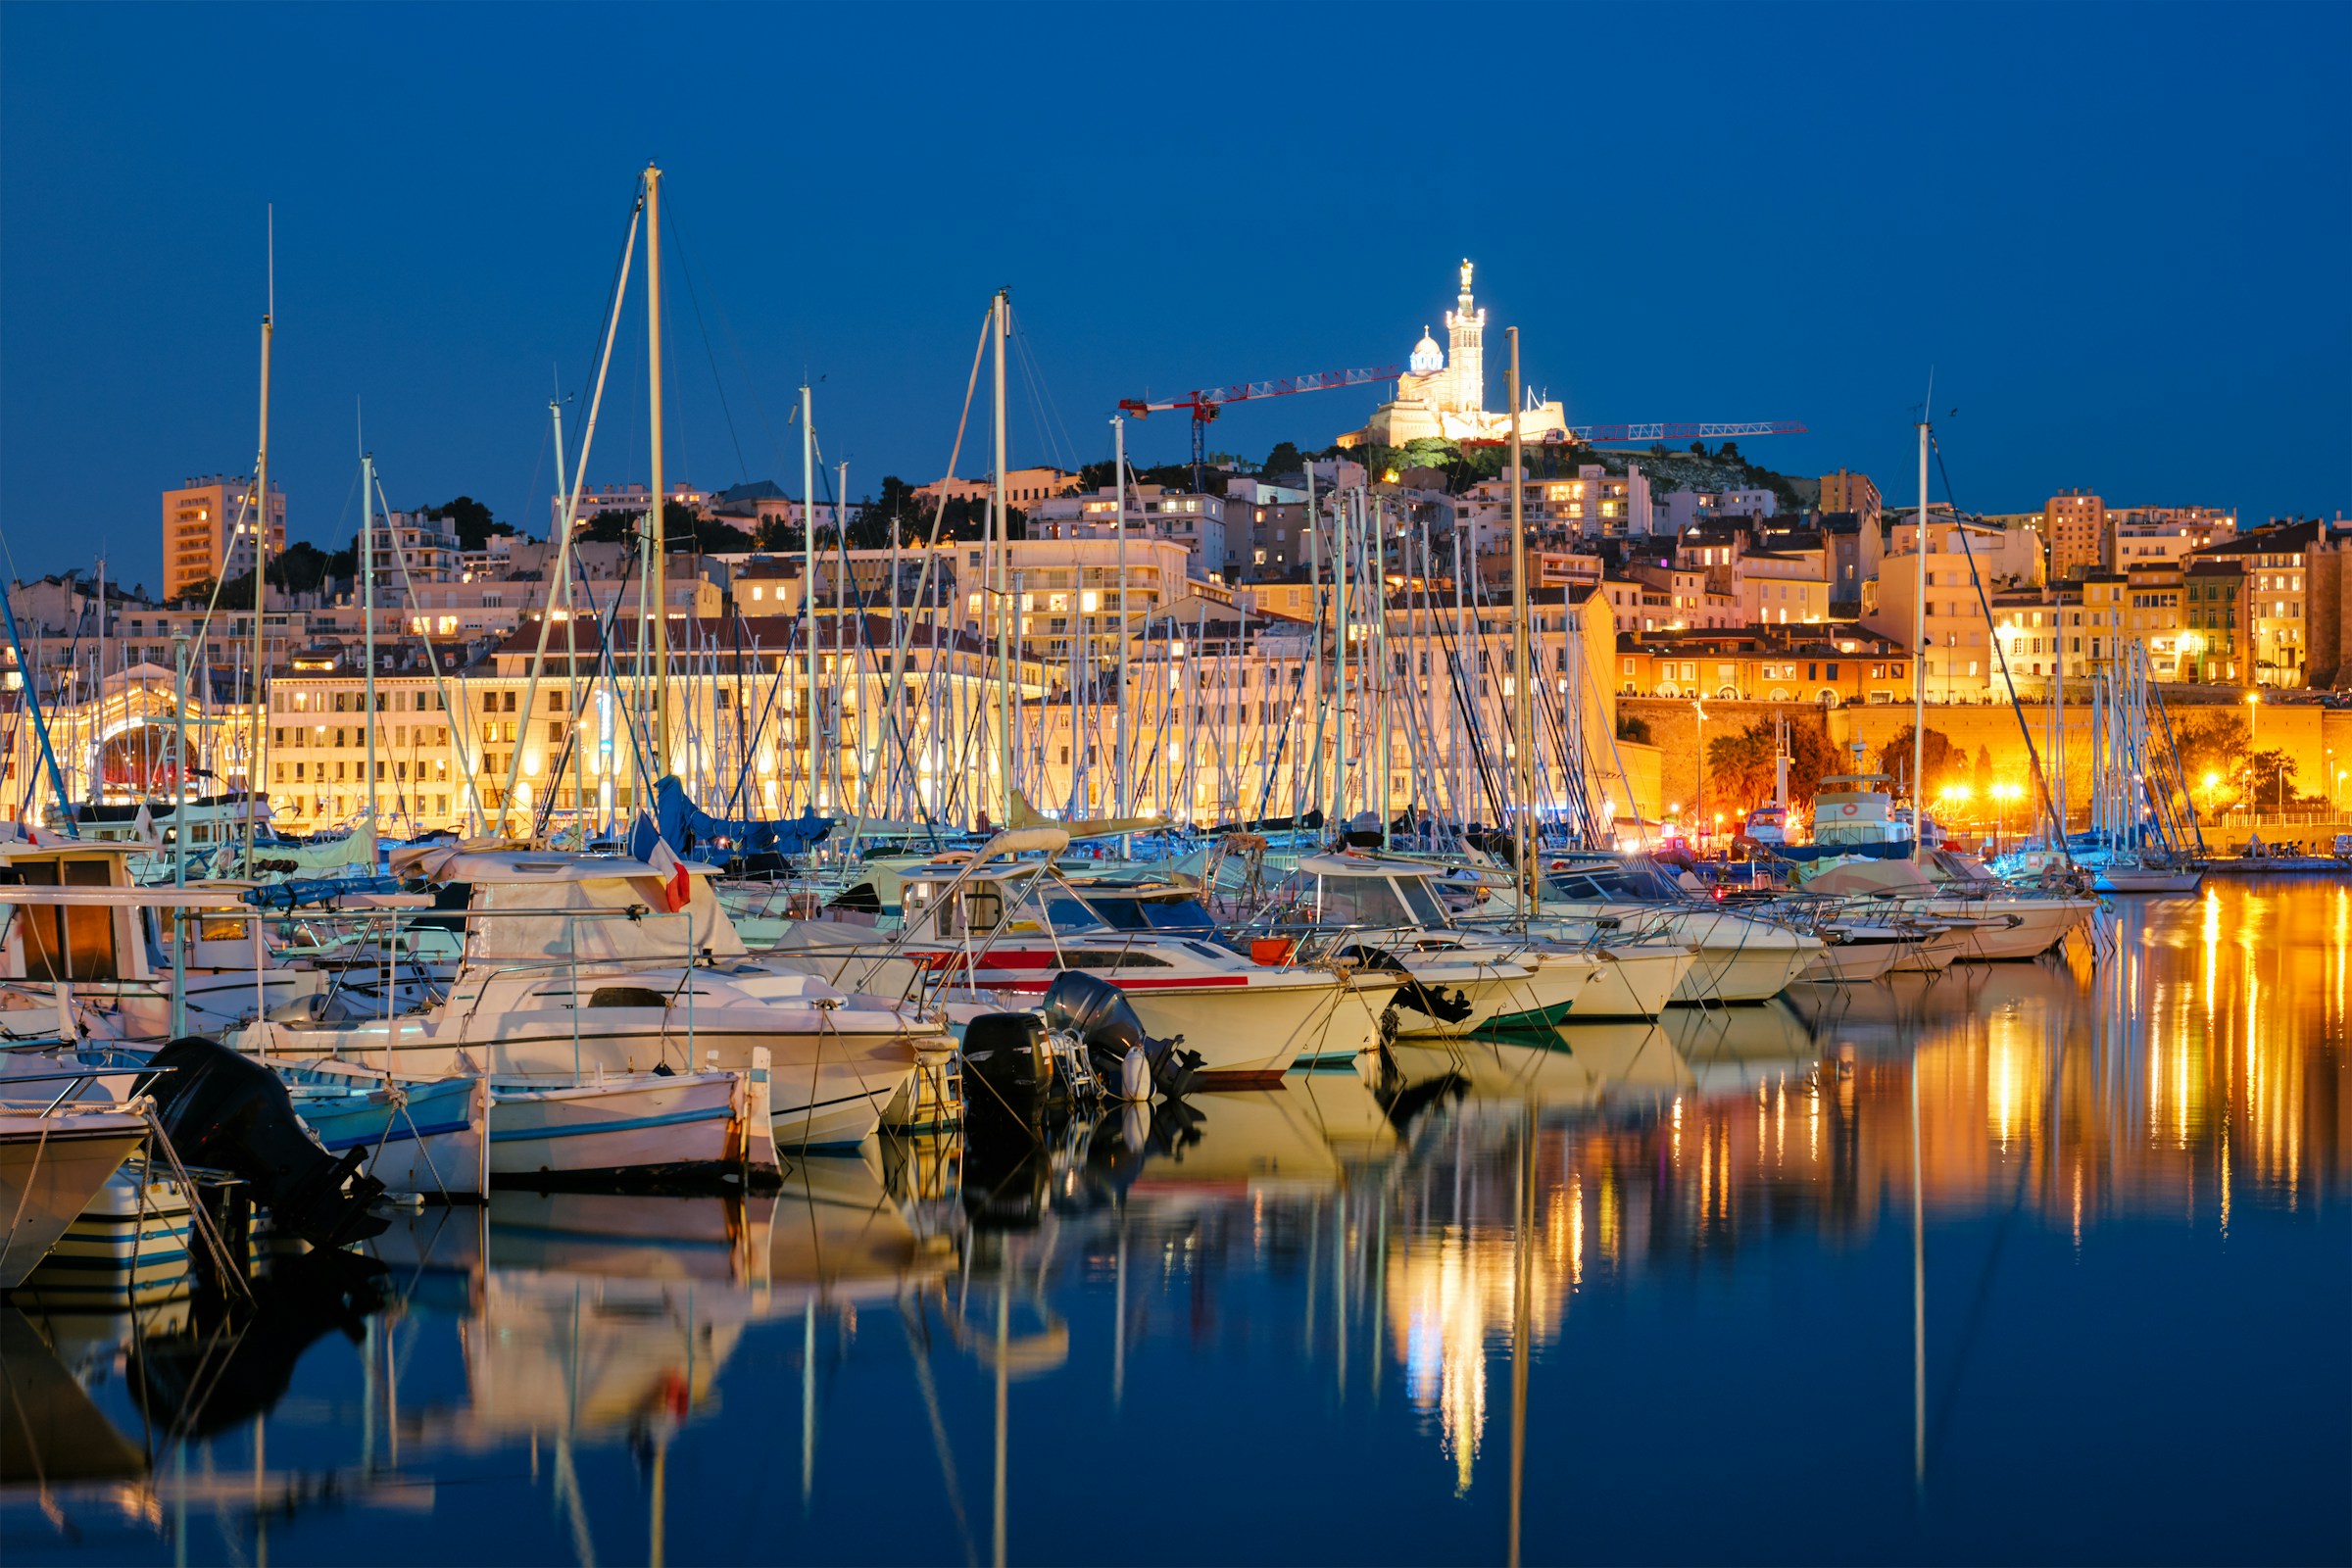 båtar i en hamn under kvällen med upplysta Franska Rivieran i bakgrunden